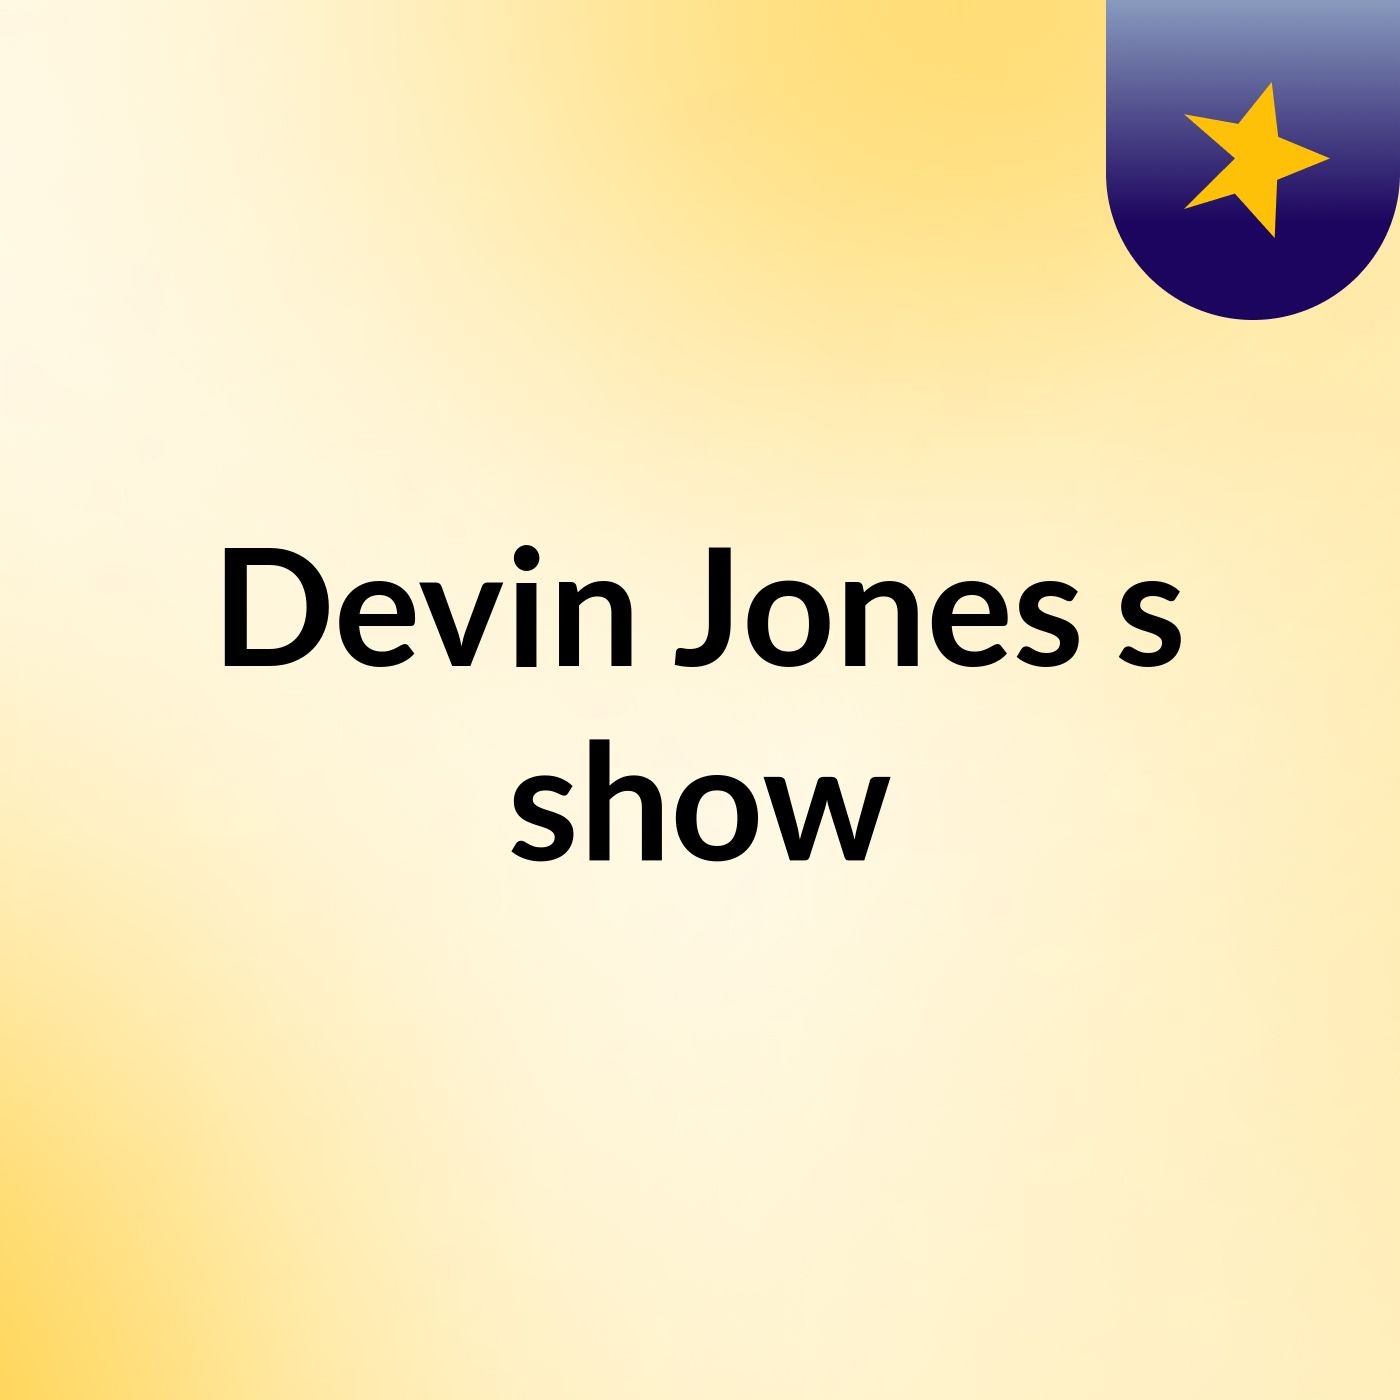 Devin Jones's show